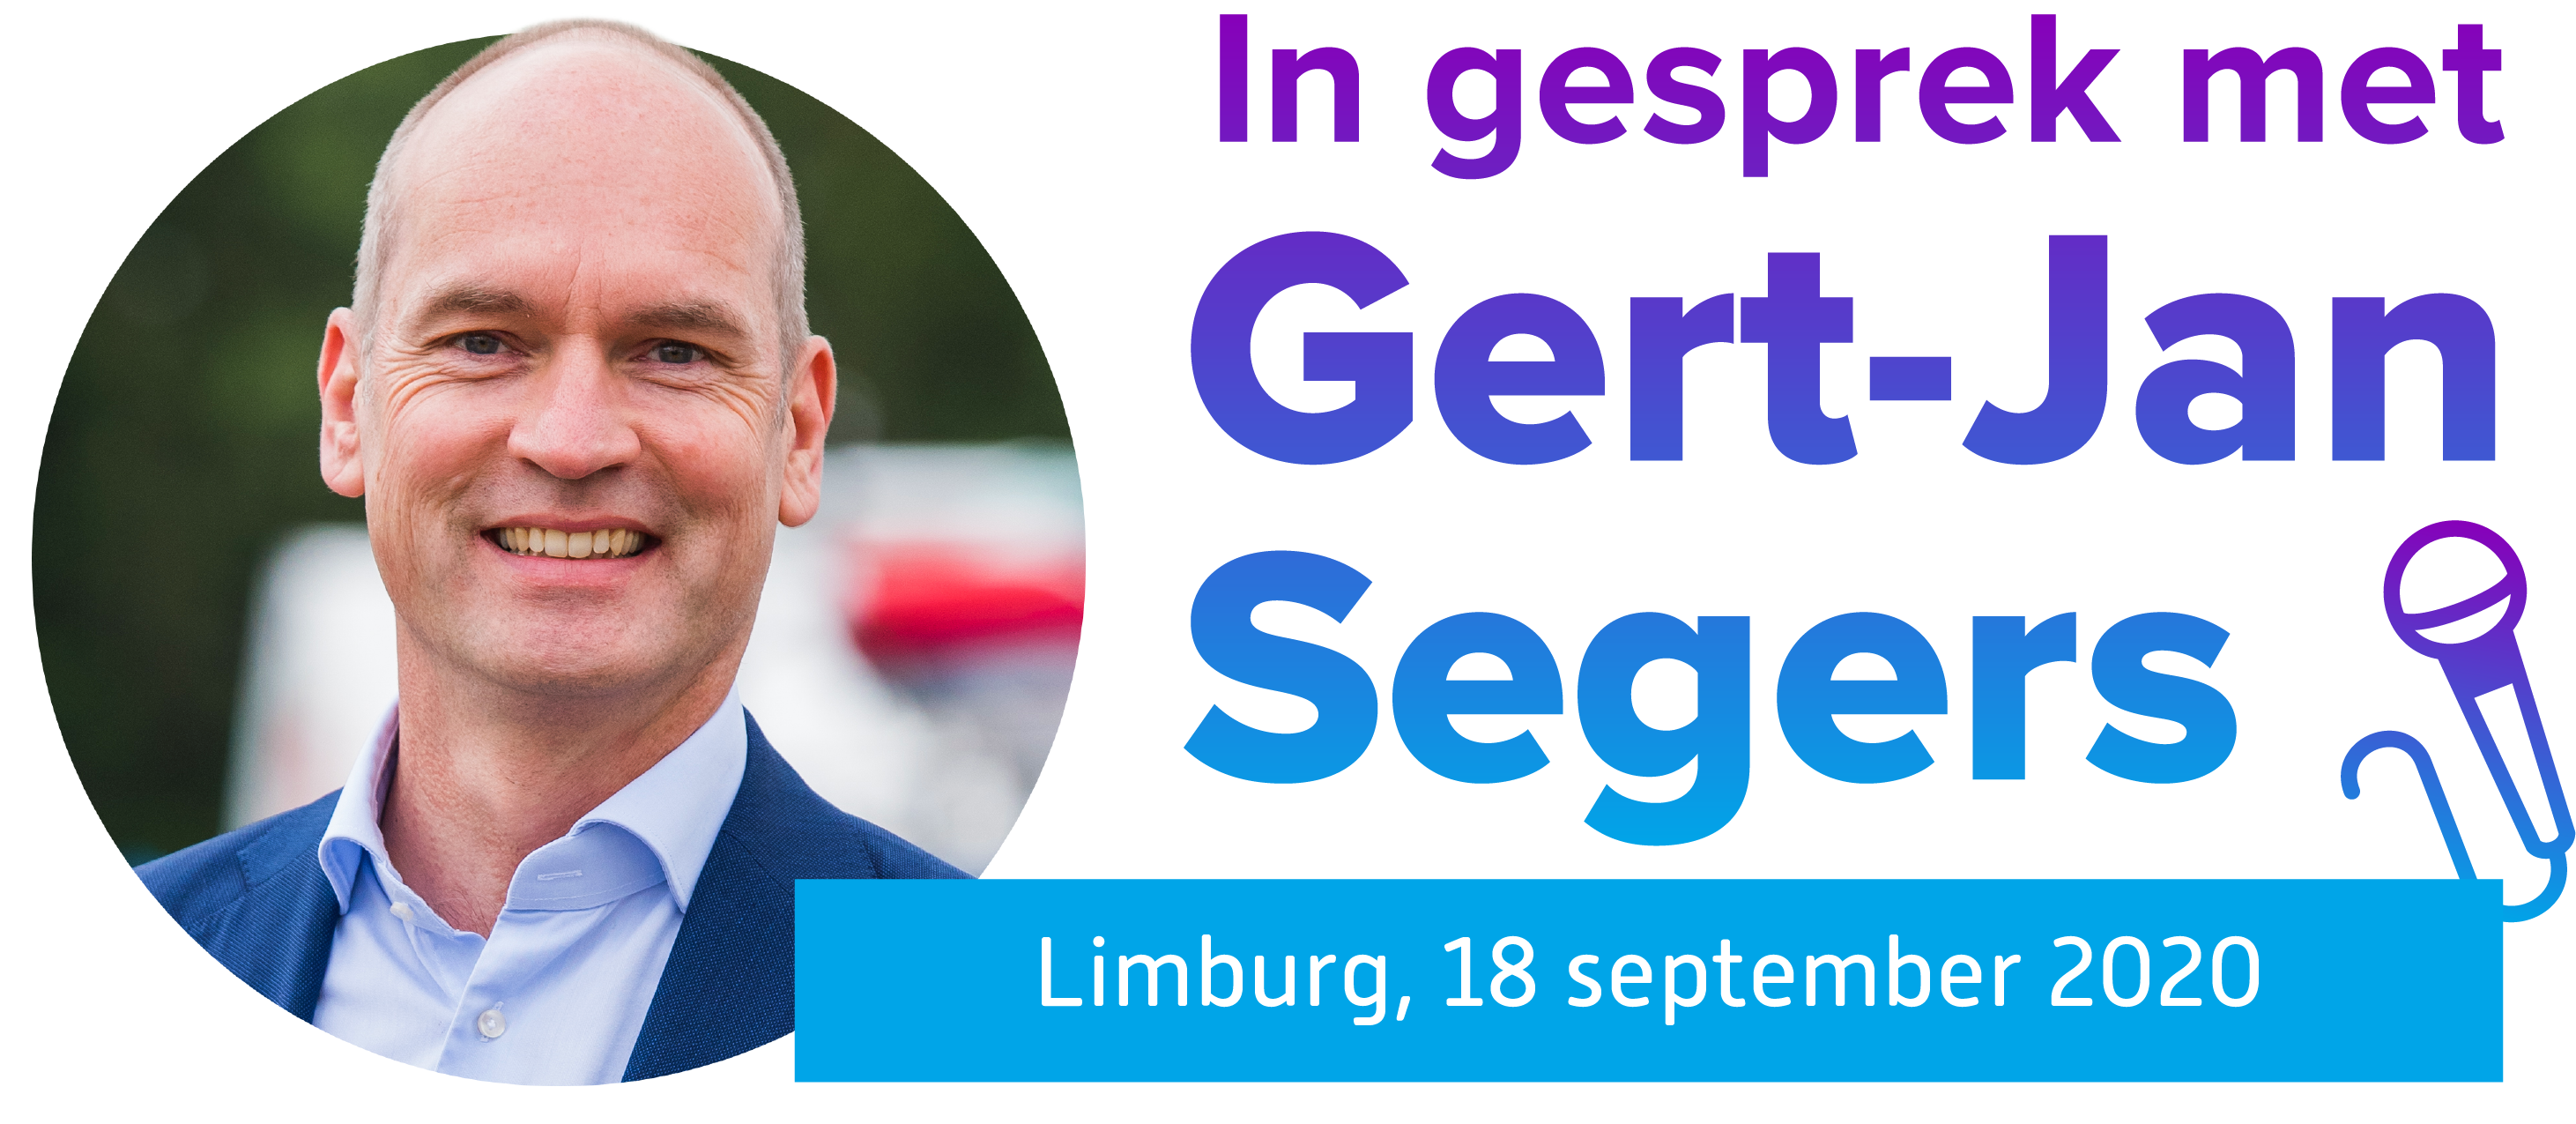 Logo In gesprek met Gert-Jan Segers - Limburg.png